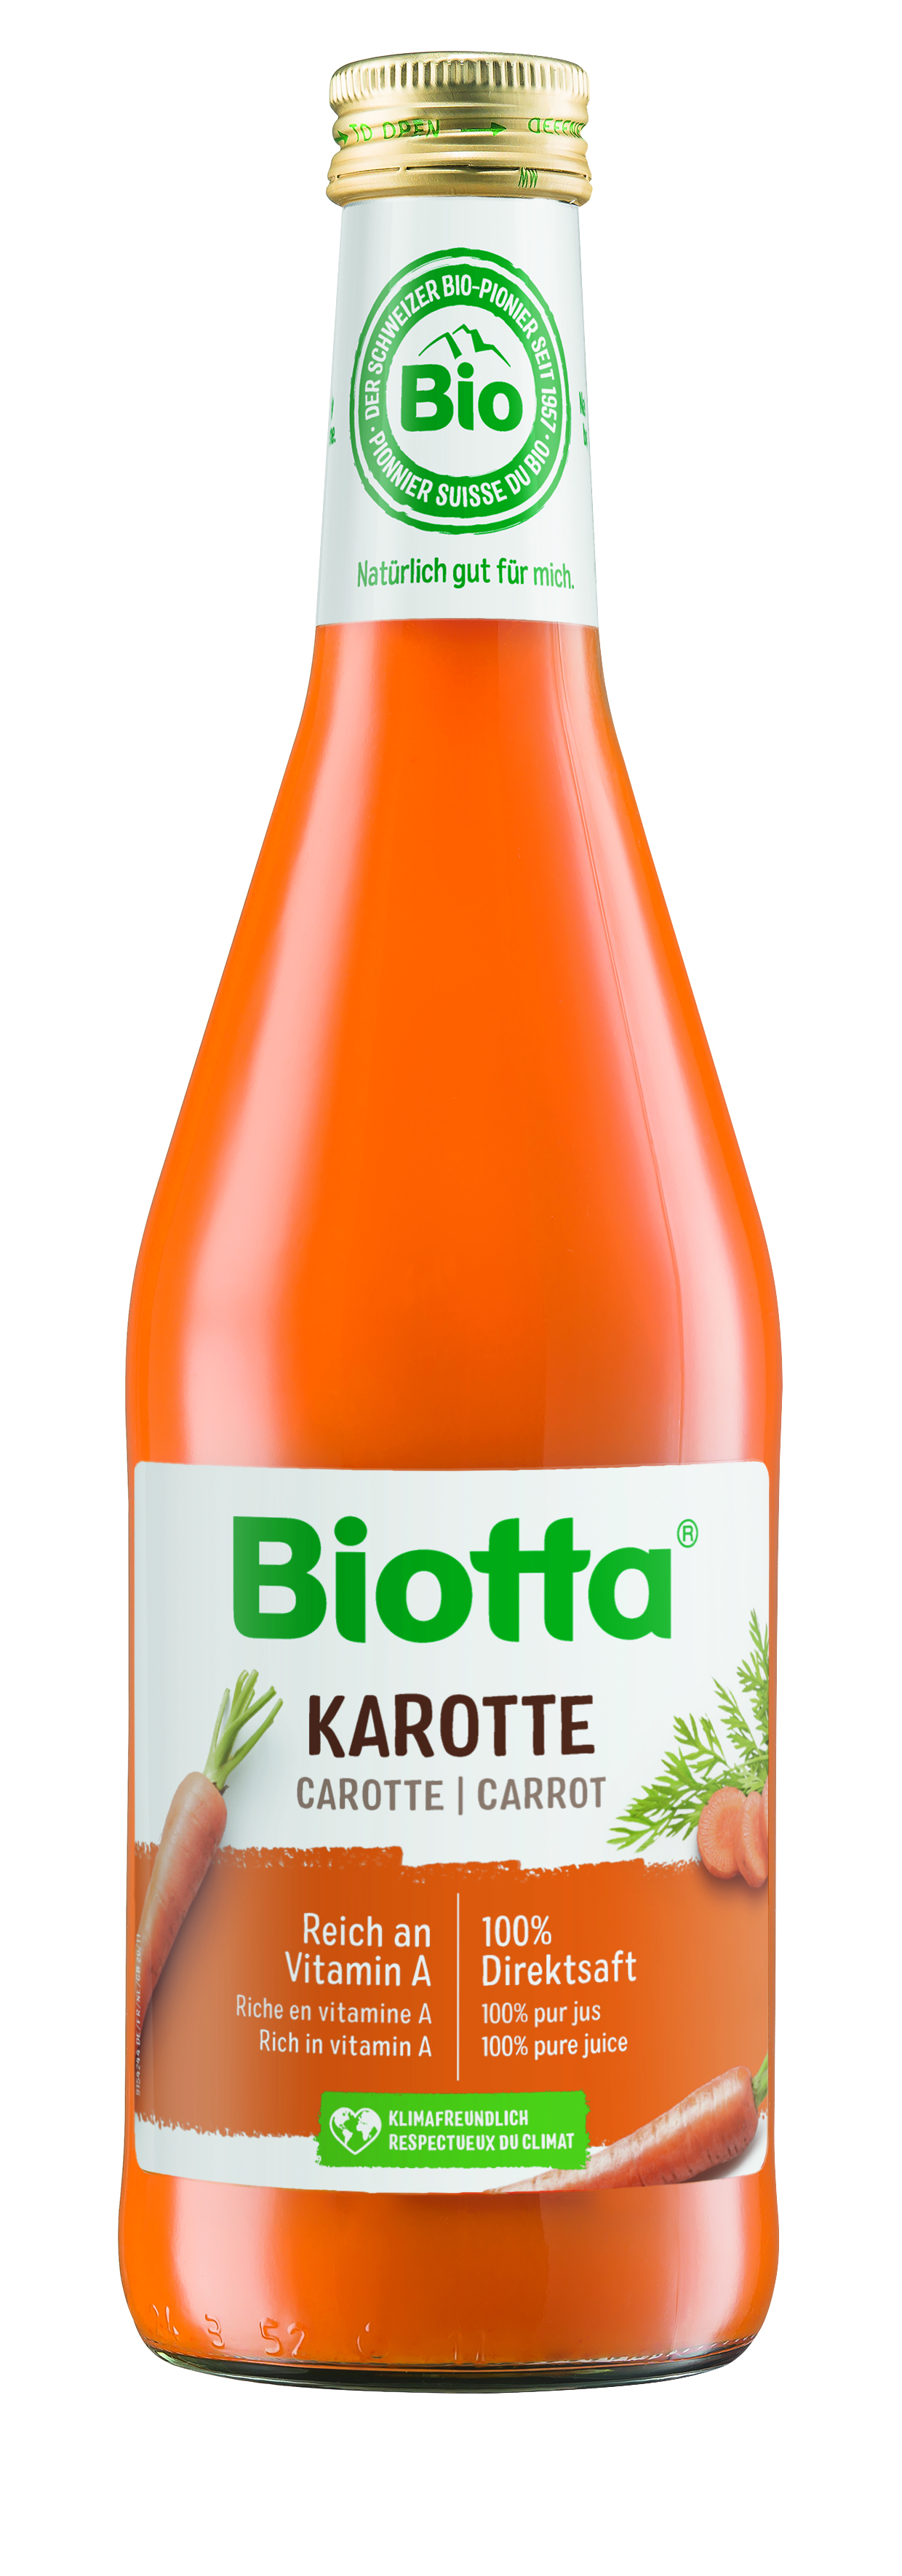 Biotta mrkvová šťava 2 kartóny - cena za 1 ks 4,158€ s DPH